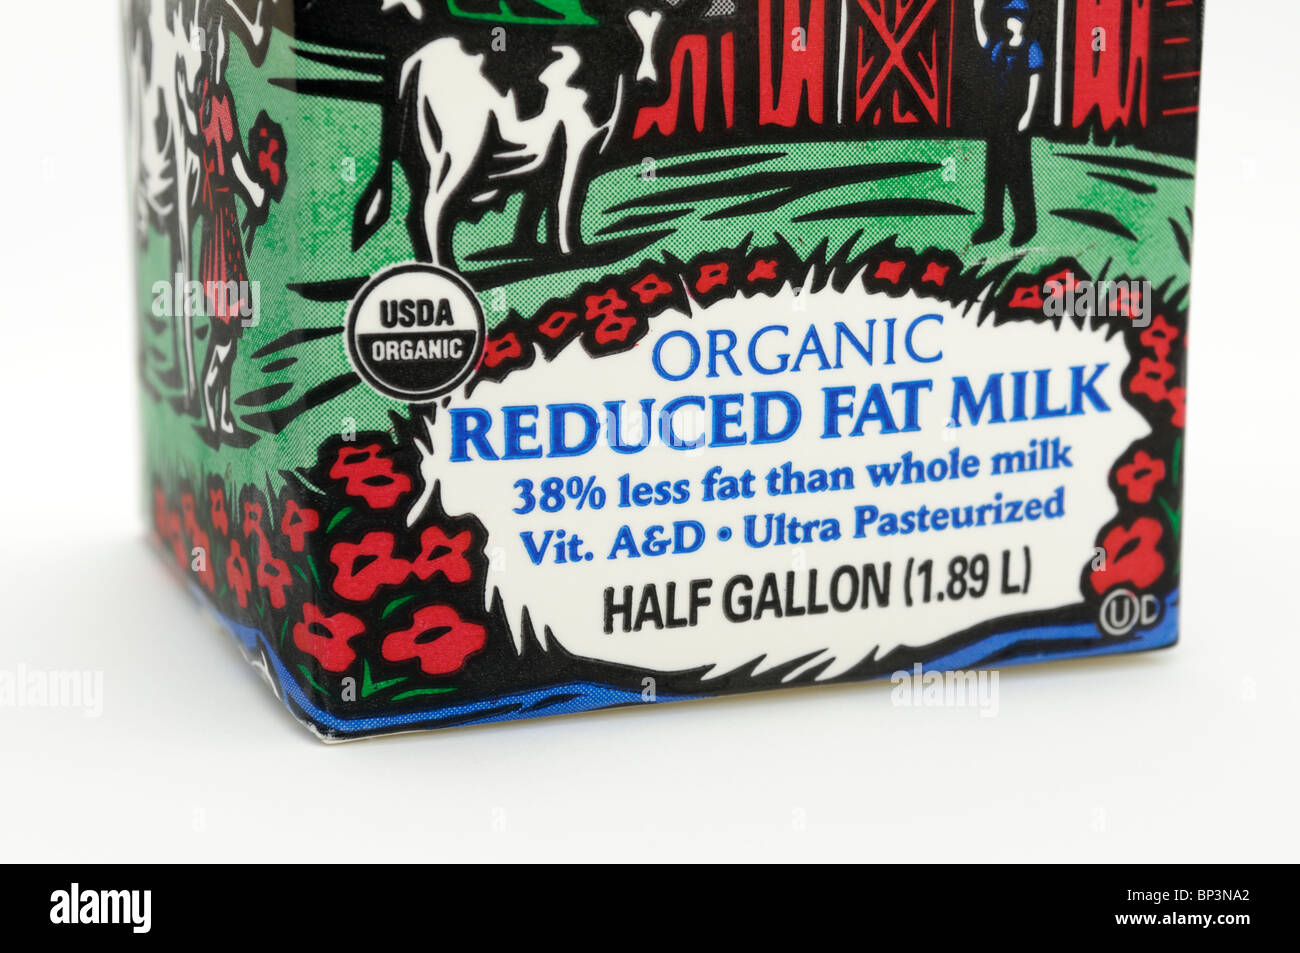 Carton de lait étiquetés comme biologiques et réduite en matières grasses. Banque D'Images